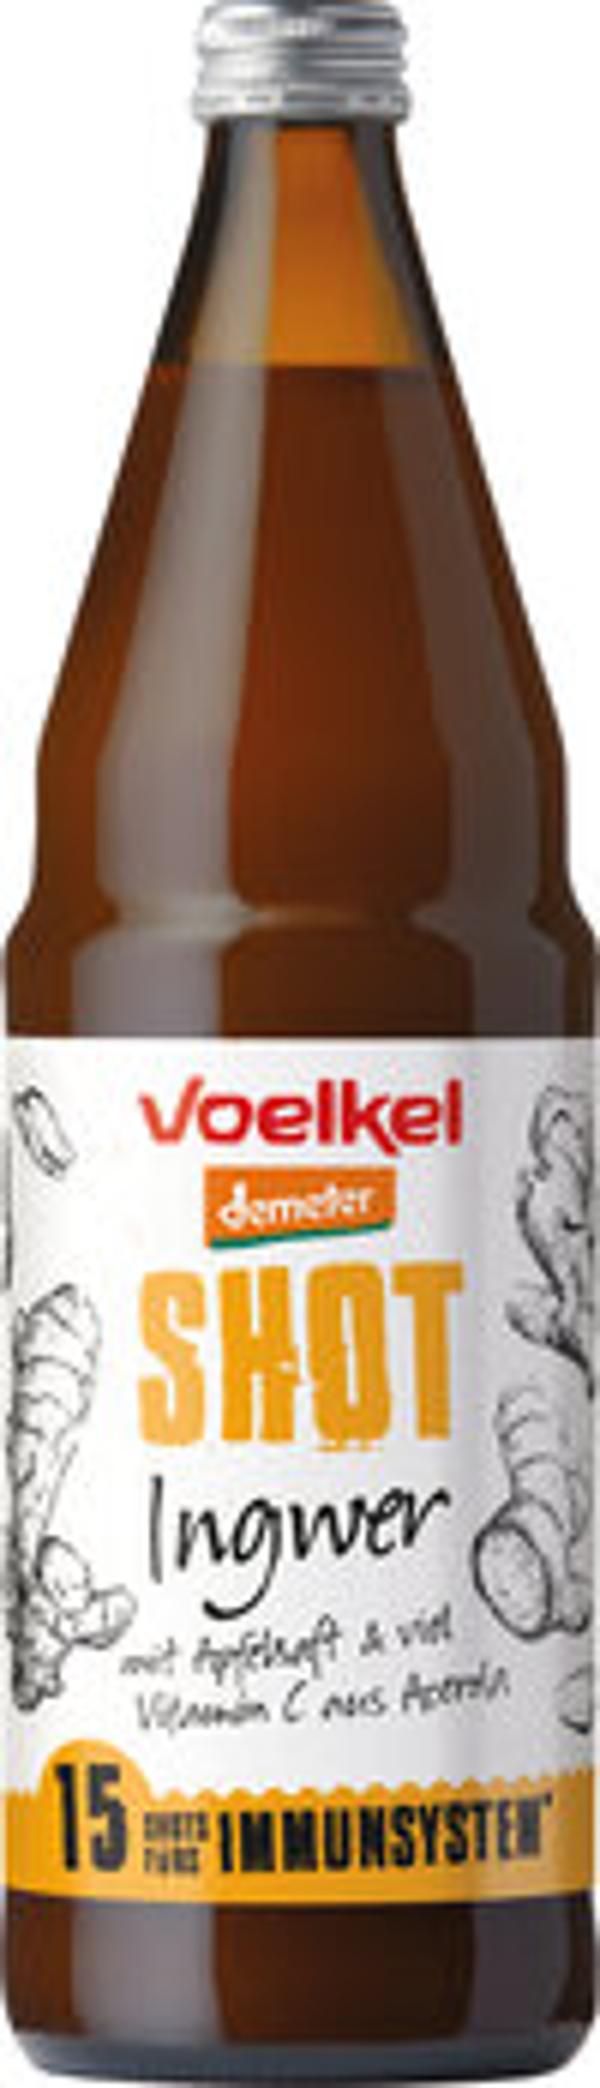 Produktfoto zu Voelkel Shot Ingwer - 0,75l